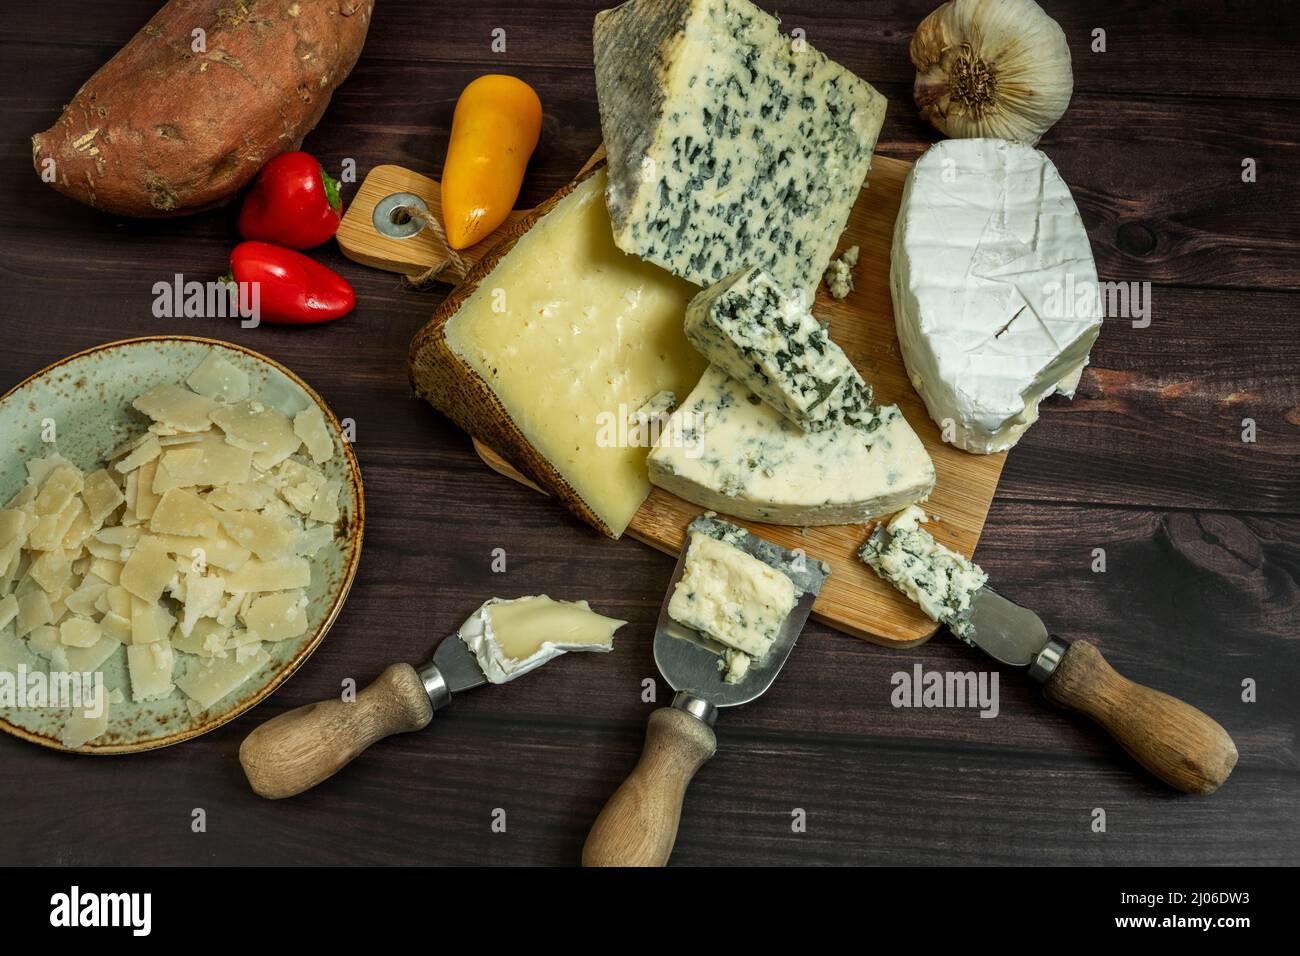 Il formaggio blu è una classificazione generale dei formaggi di latte di vacca, pecora e capra che hanno colture di Penicillium aggiunte al prodotto finale nel loro p Foto Stock